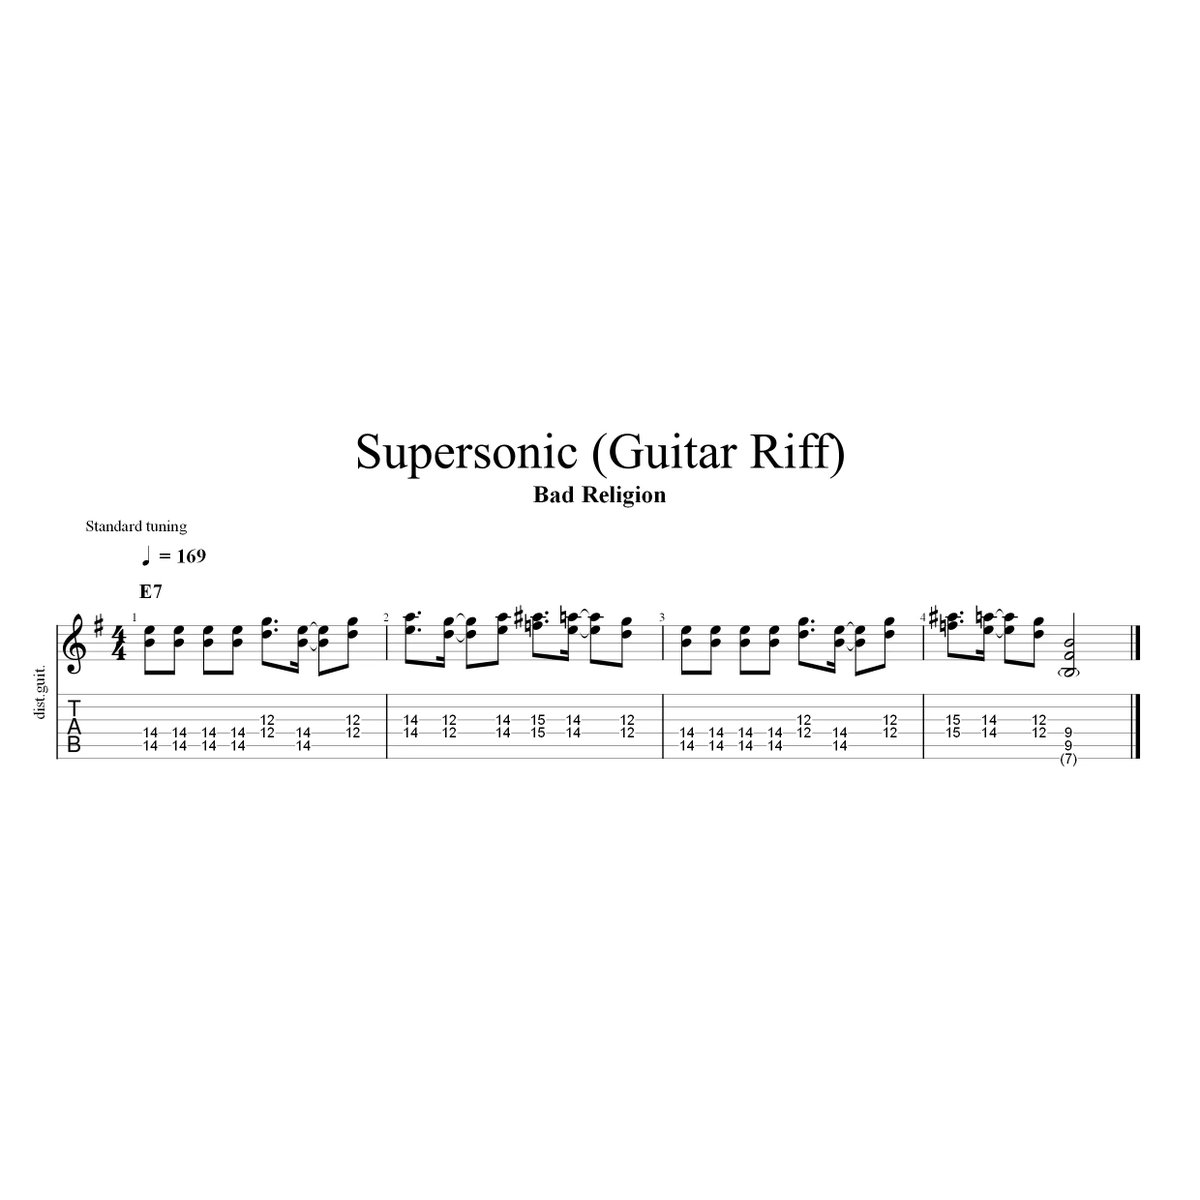 #1日1リフ 308日目
Bad Religion - Supersonic
のギターリフです。

ツインギター上パート、左チャンネル。
こう聴こえますが、
5弦ルートのパワーコード中心で、
オクタヴィア的なの使ってるのかも。😅

#BadReligion #Supersonic #TheProcessOfBelief #BrianBaker #GregHetson #GuitarRiff